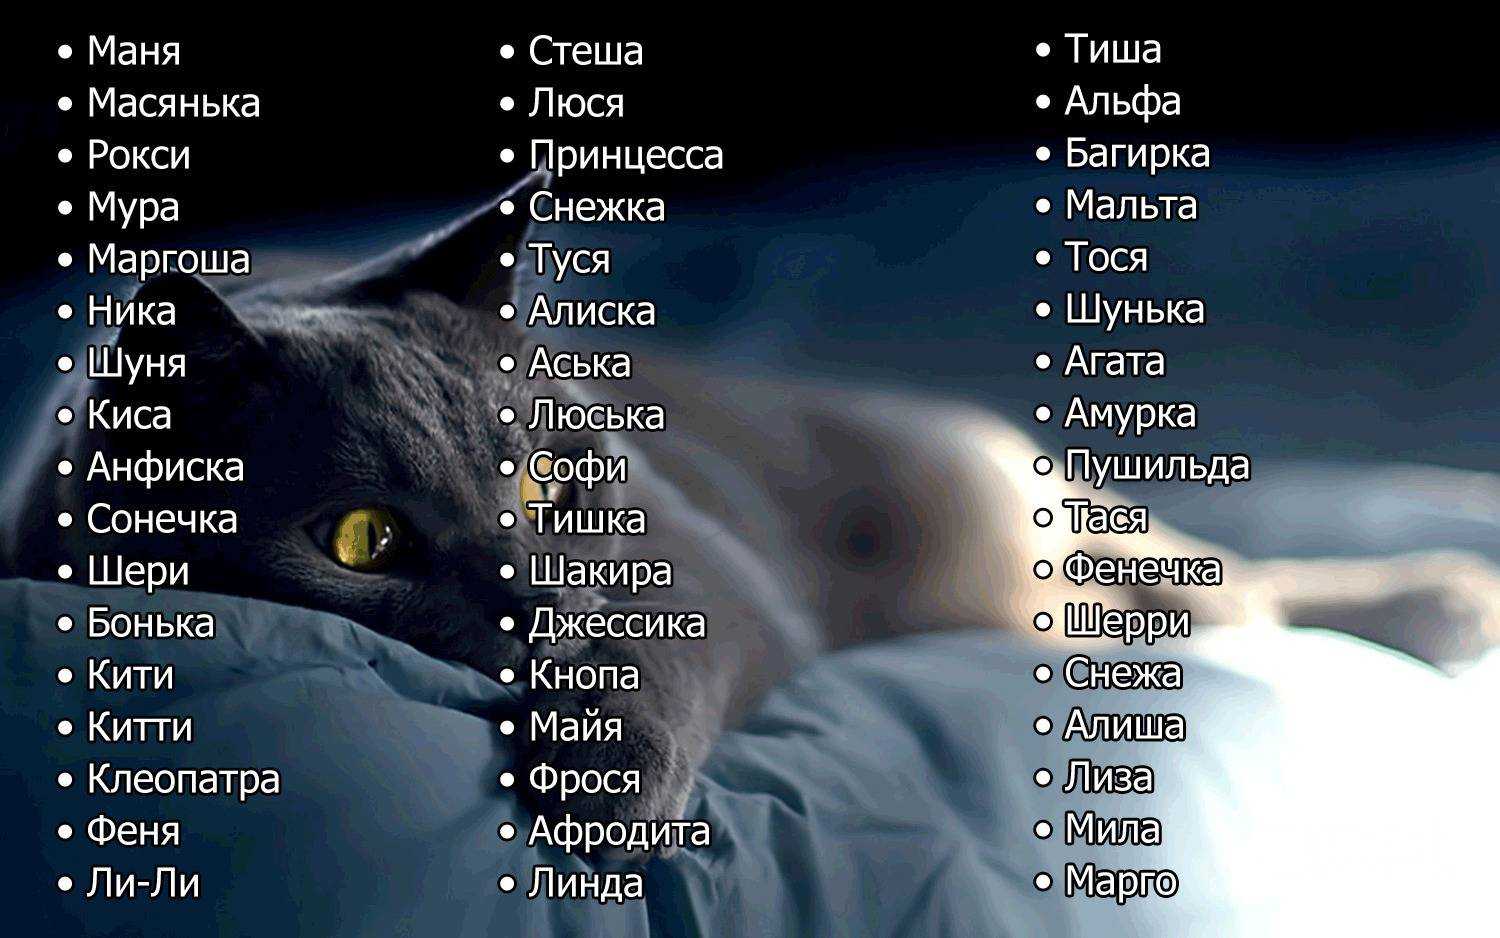 Огромный список кличек для кошки на каждую букву алфавита, по породам, по окрасу Самые прикольные, красивые и редкие имена для котенка девочки Узнайте самое красивое имя